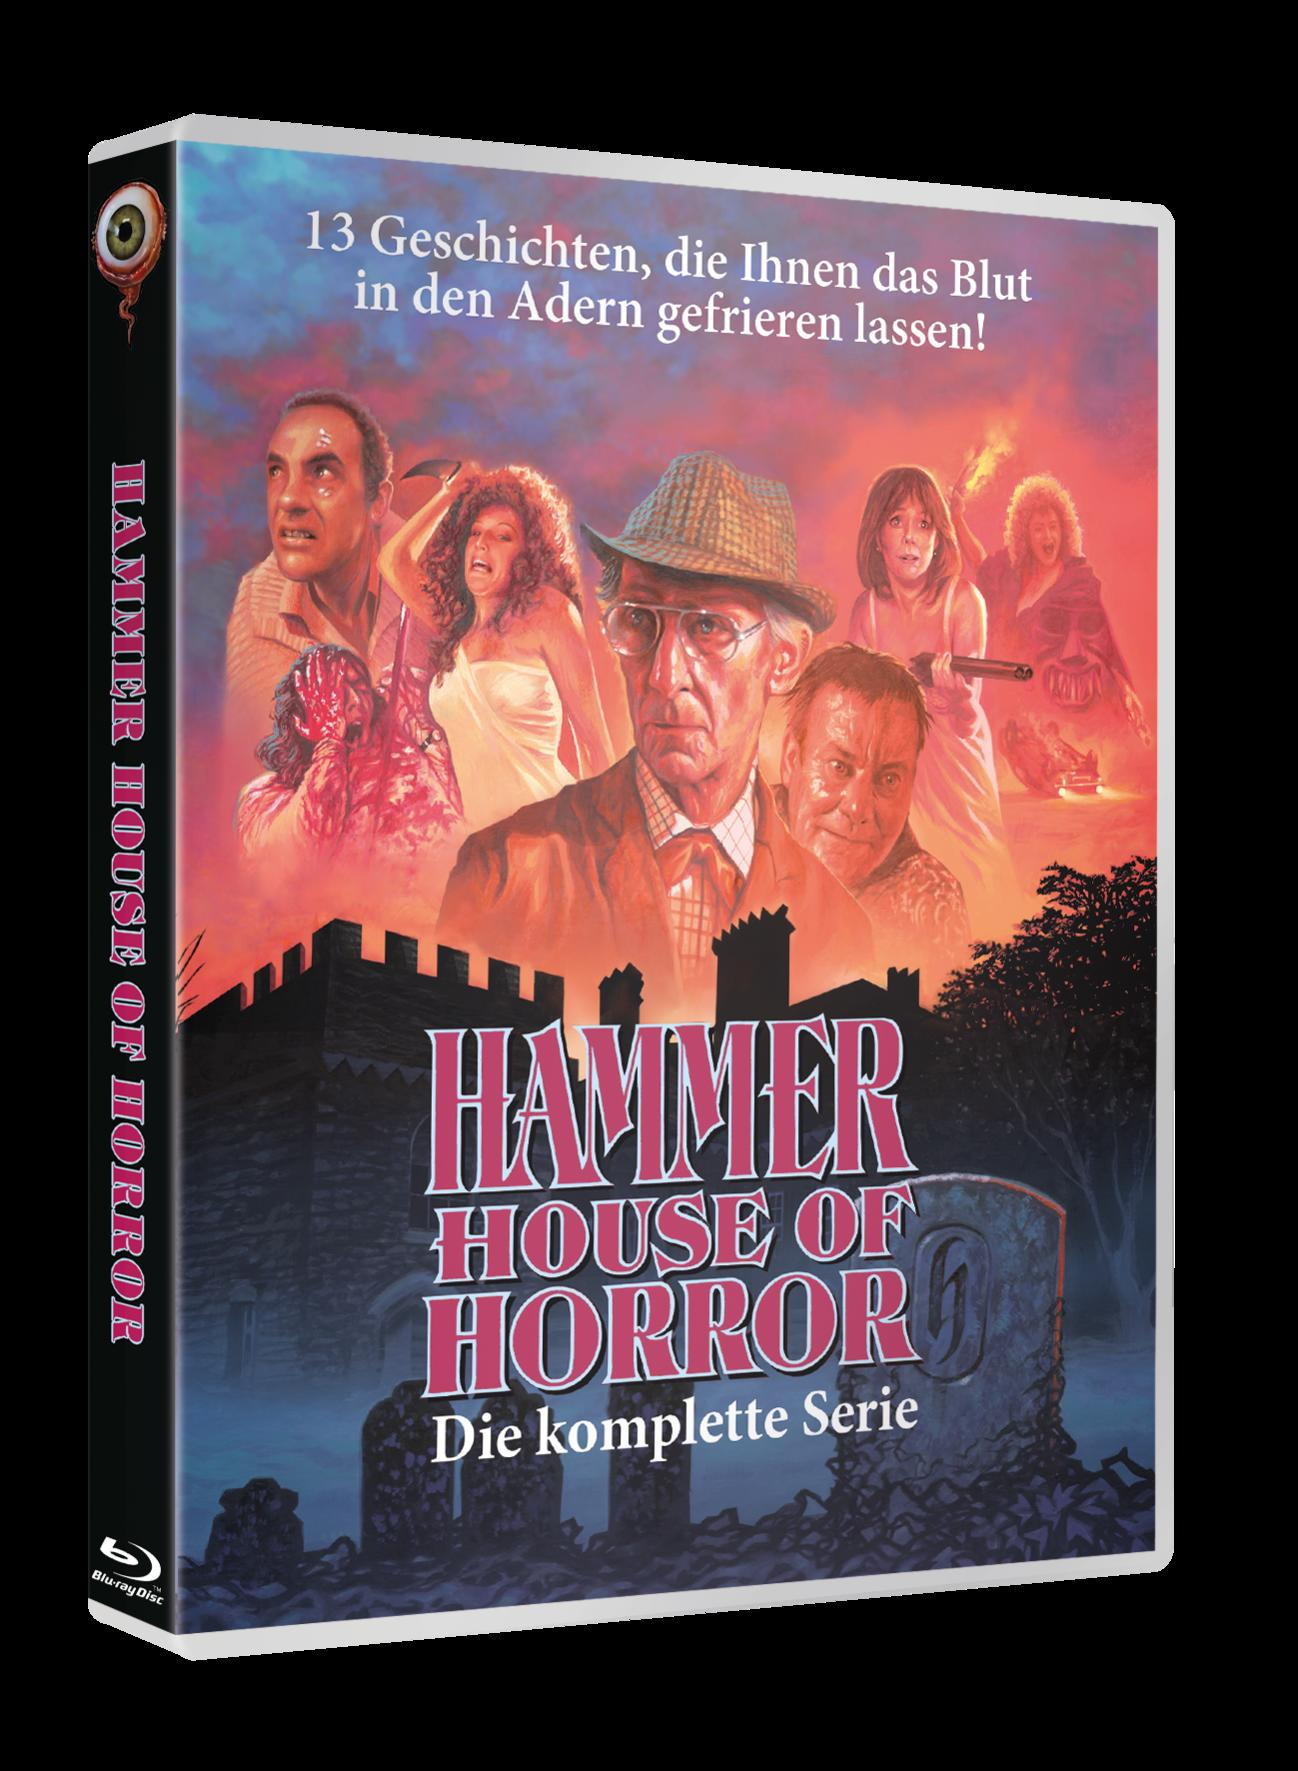 Hammer House komplett of Horror Blu-ray